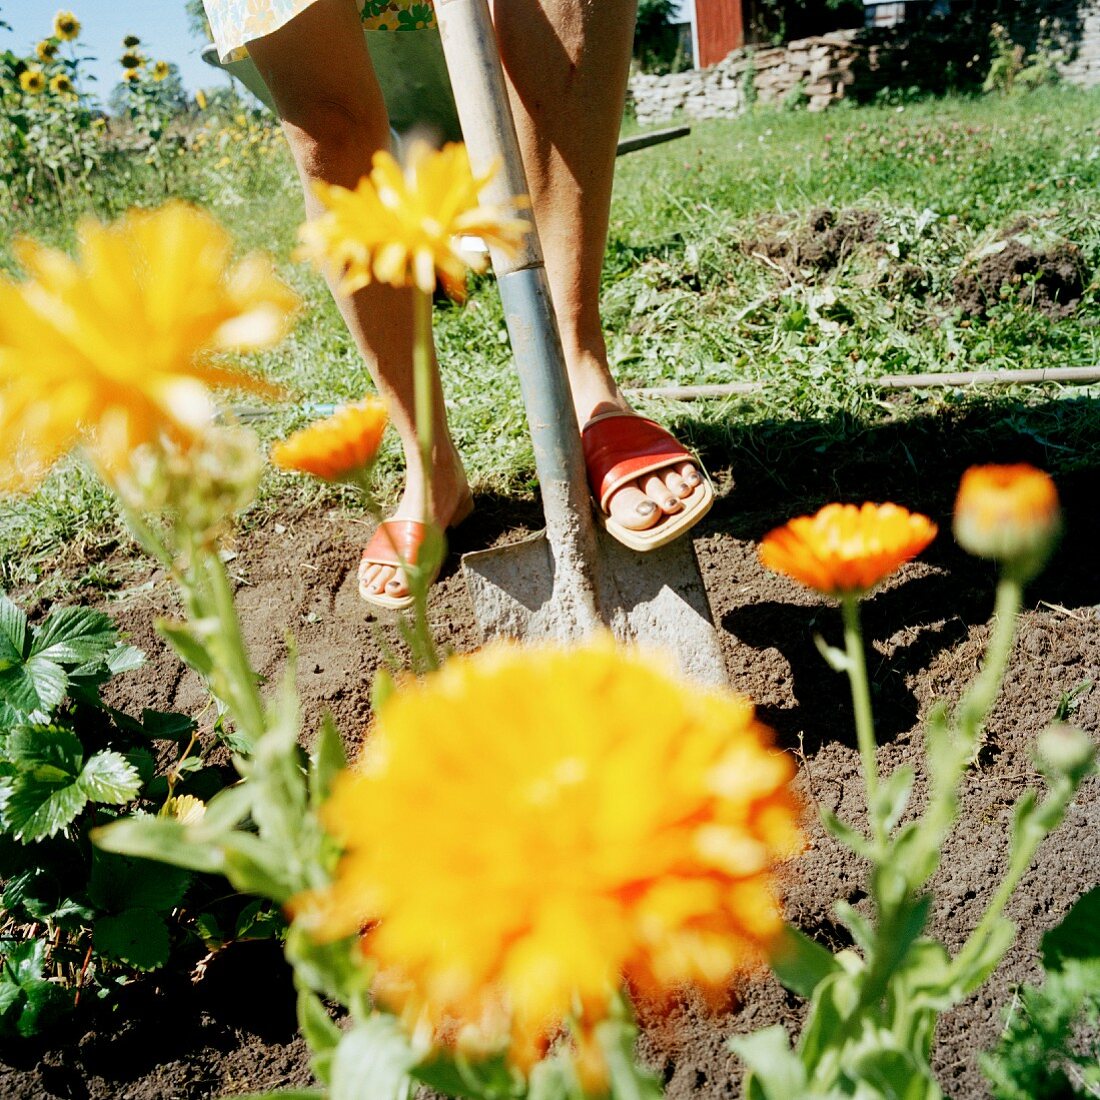 Gardening in a flowerbed